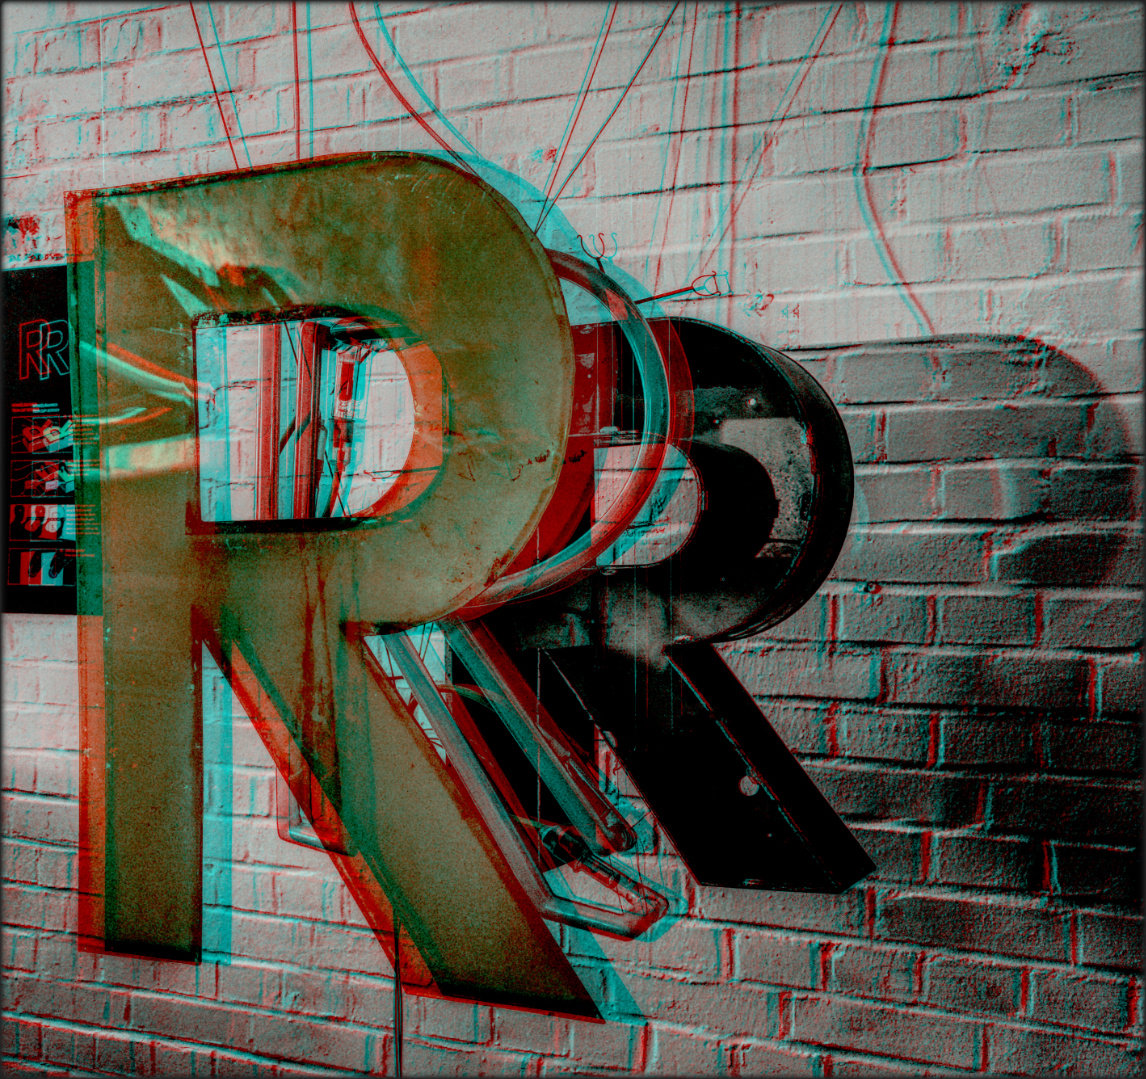 Das Innere des großen R (3D)